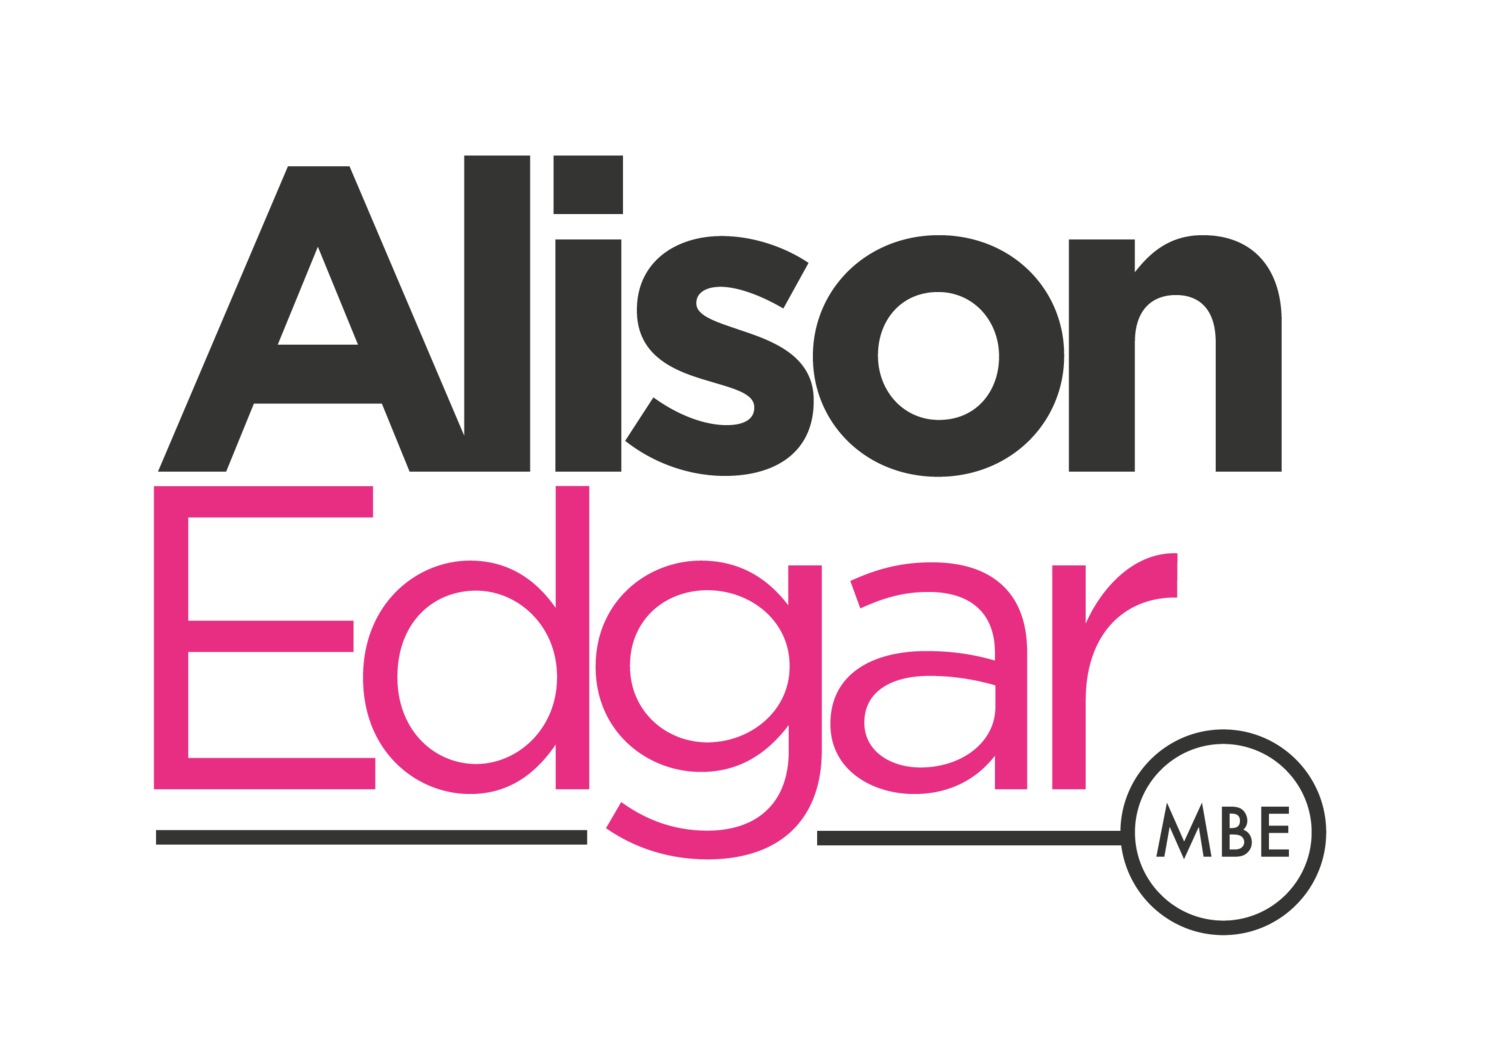 UK Motivational Speaker - Alison Edgar MBE